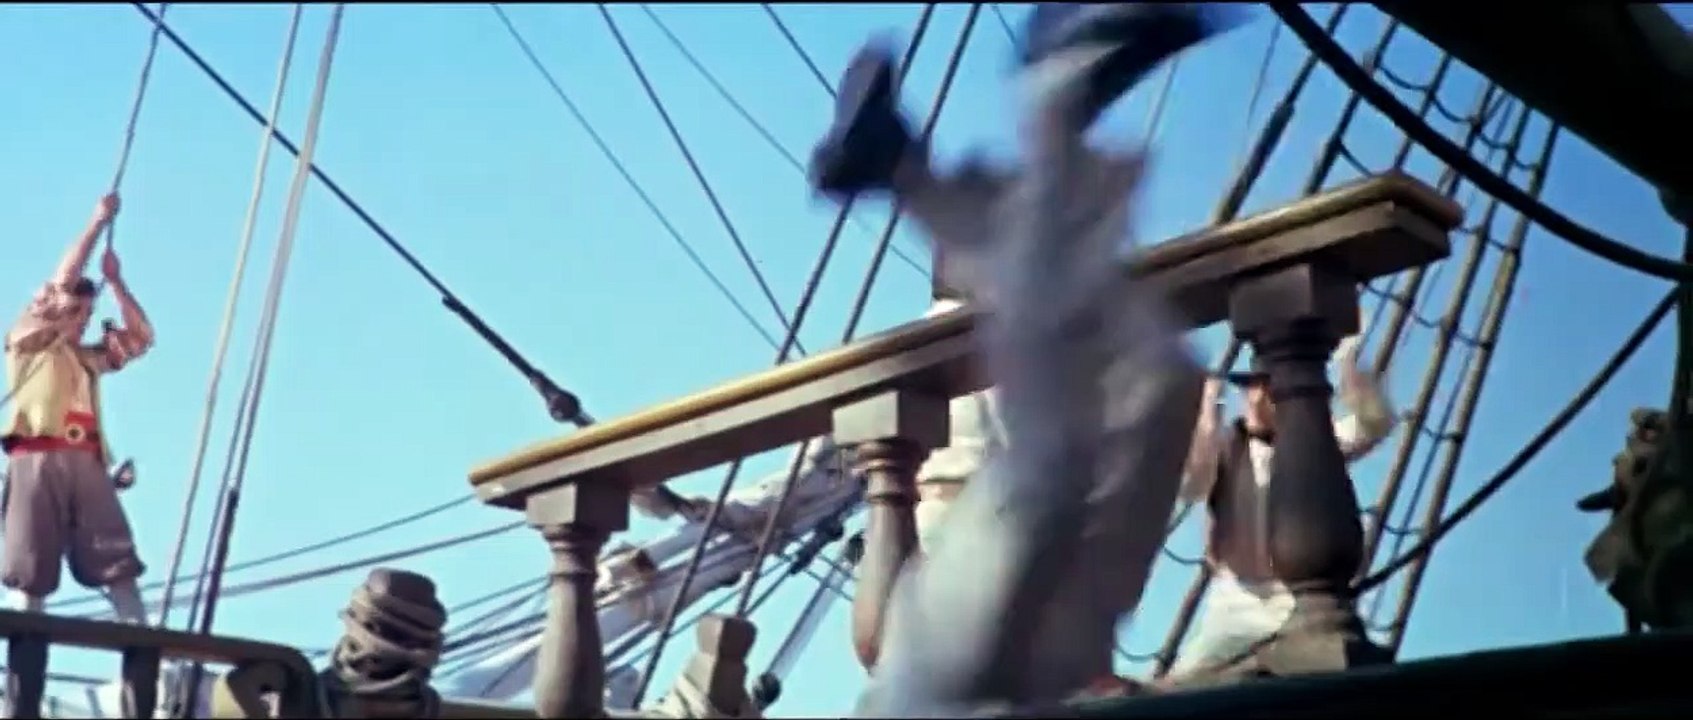 Donner über dem indischen Ozean | movie | 1966 | Official Trailer